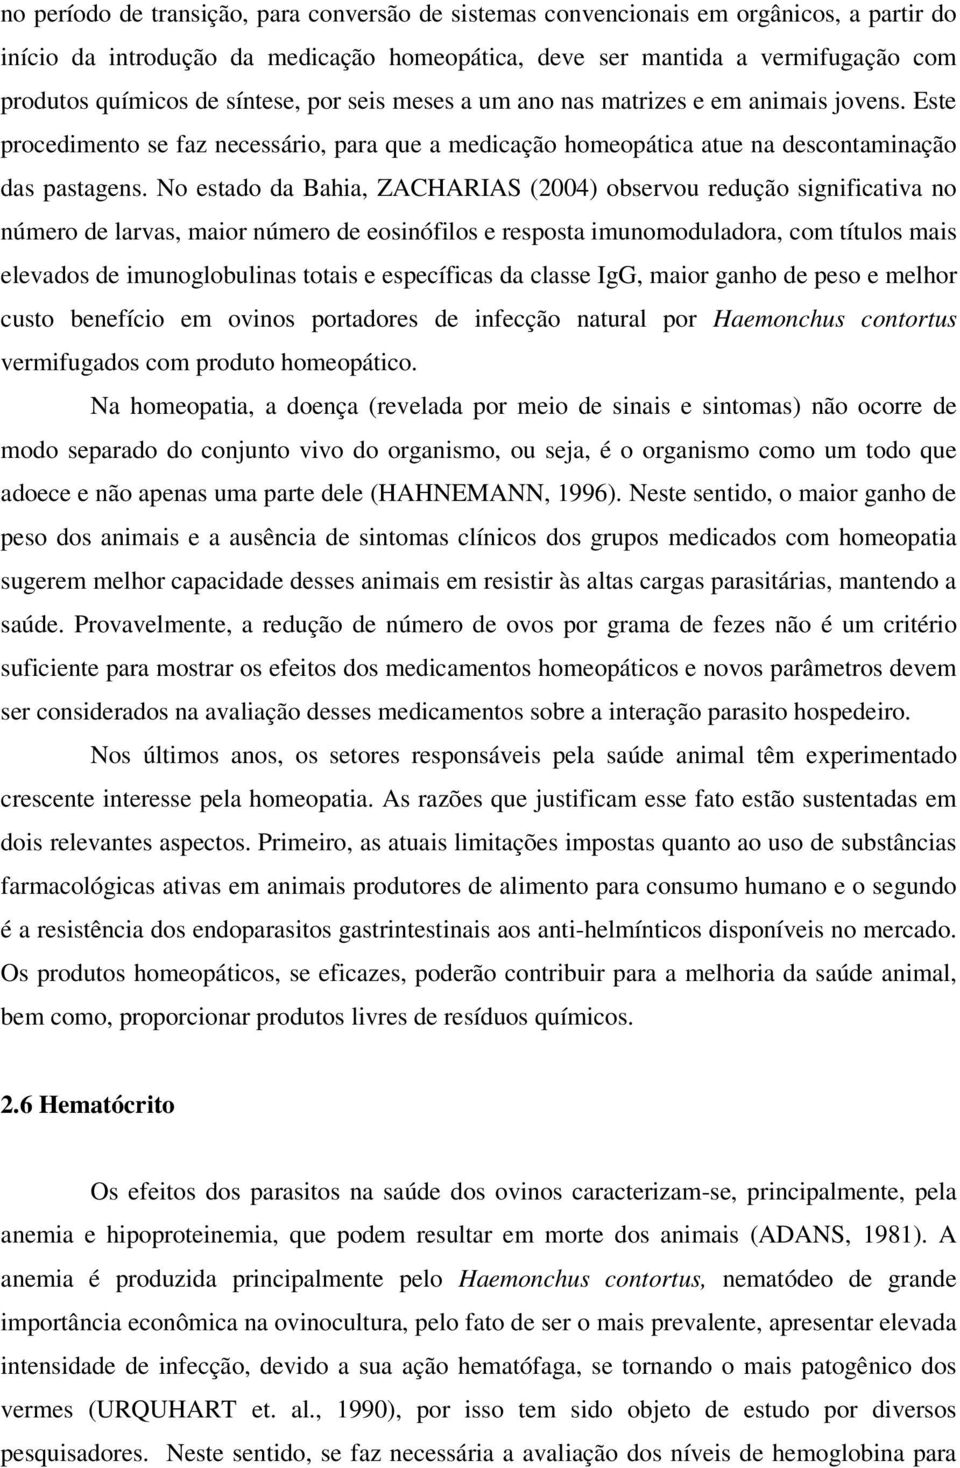 No estado da Bahia, ZACHARIAS (2004) observou redução significativa no número de larvas, maior número de eosinófilos e resposta imunomoduladora, com títulos mais elevados de imunoglobulinas totais e